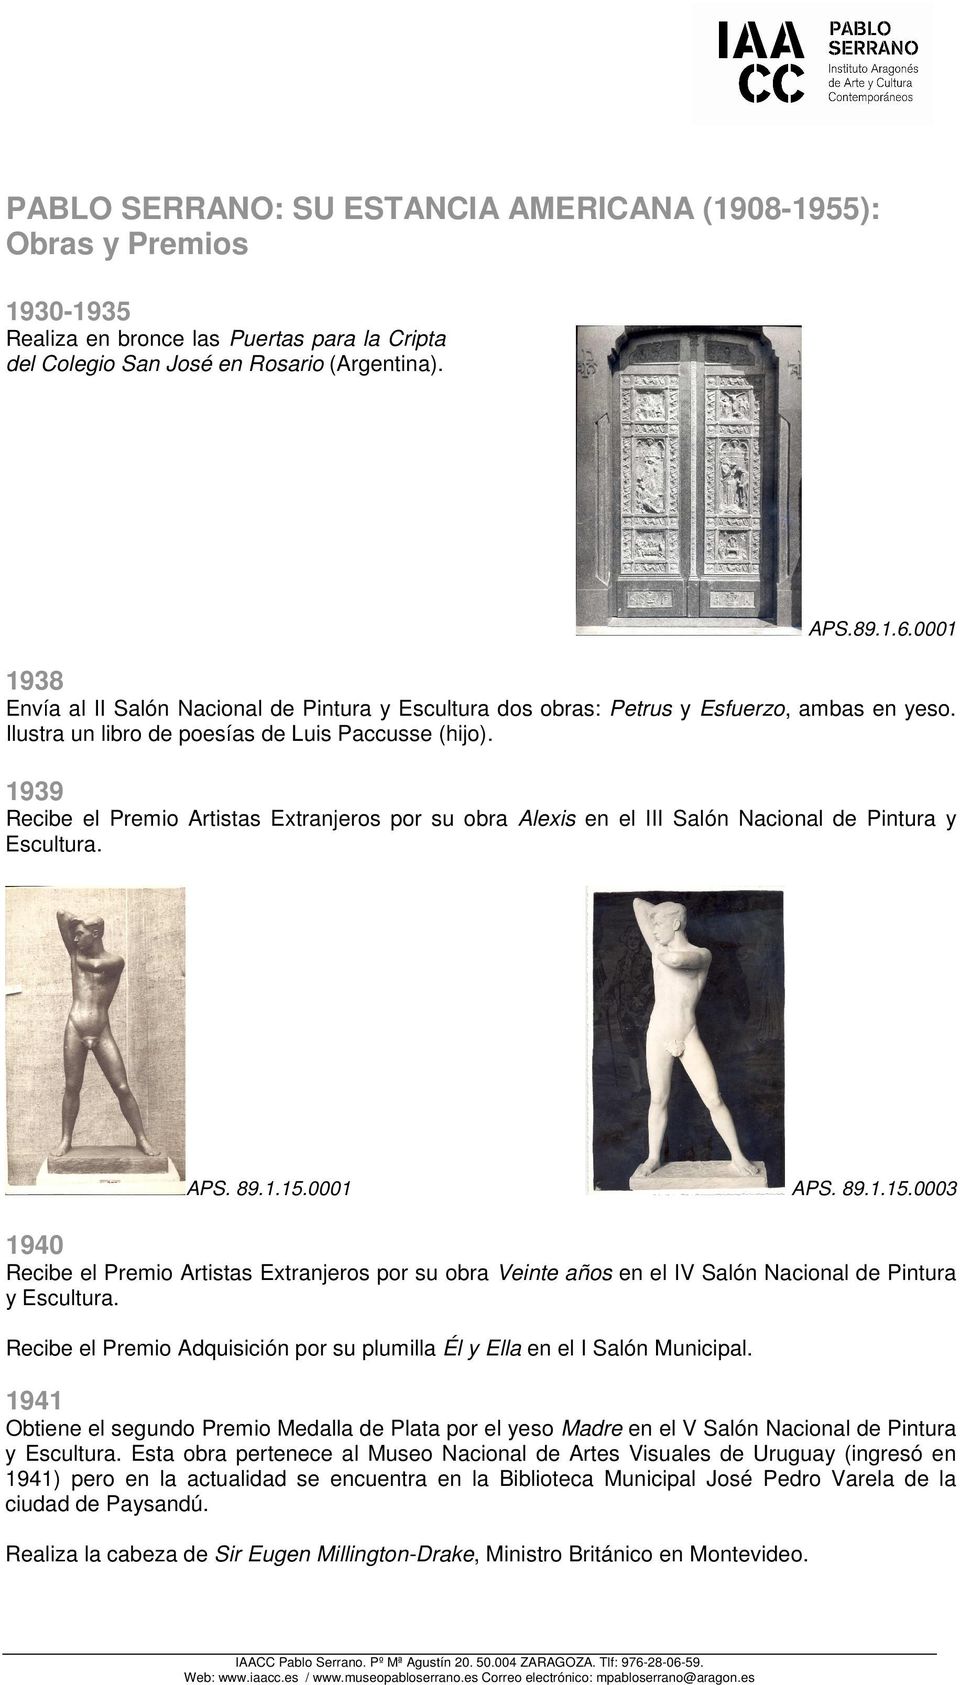 1939 Recibe el Premio Artistas Extranjeros por su obra Alexis en el III Salón Nacional de Pintura y Escultura. APS. 89.1.15.